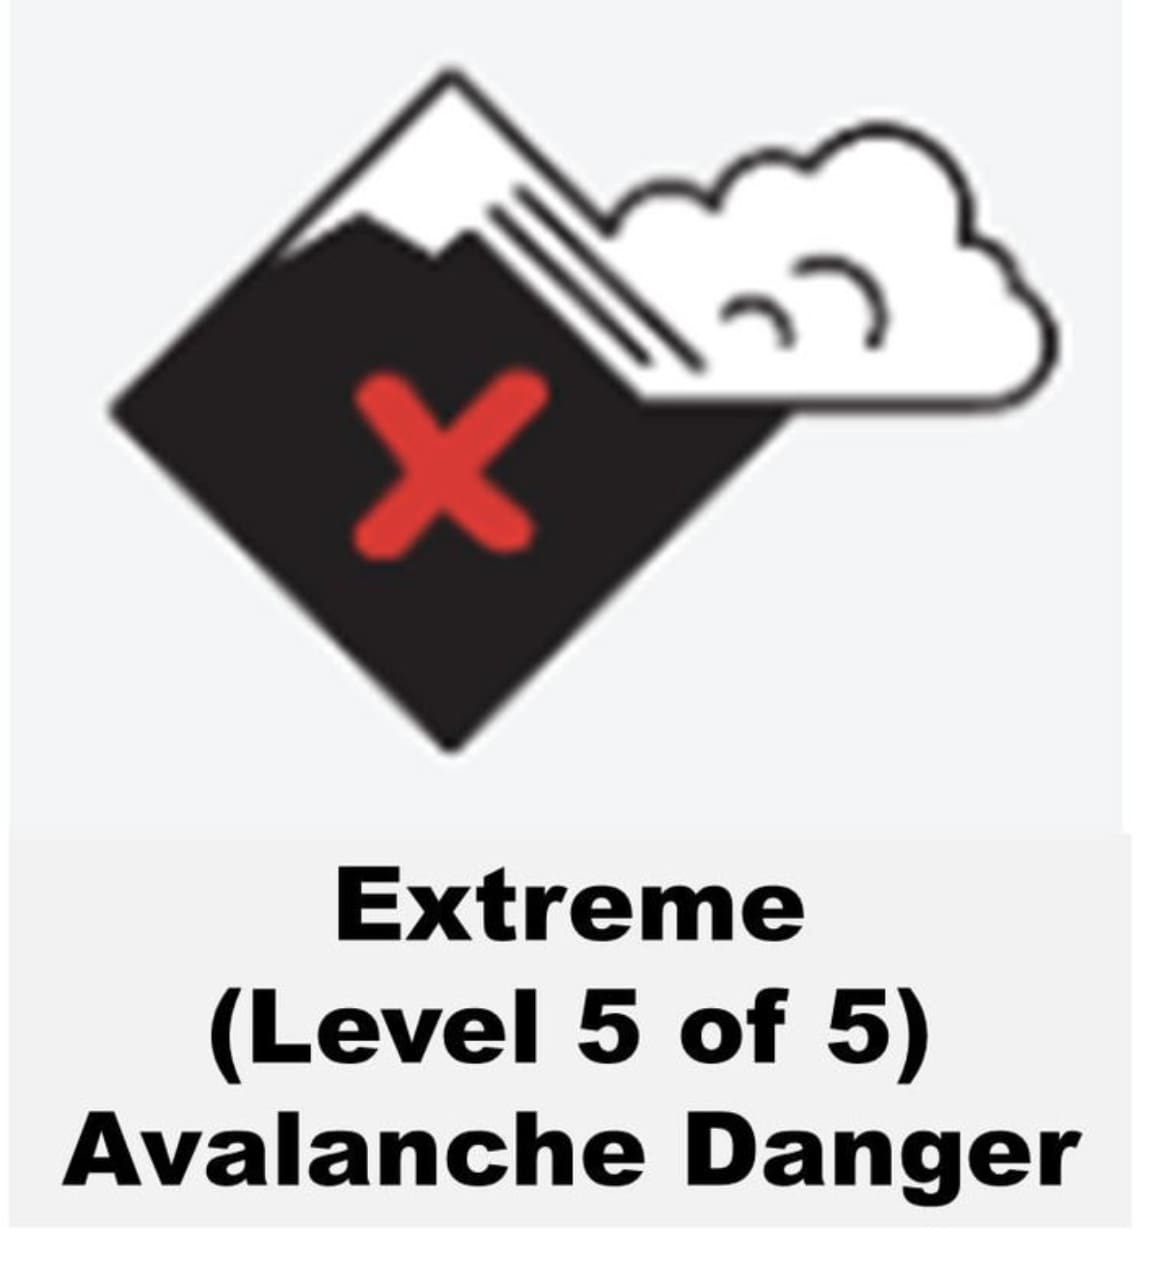 Level 5 avalanche warning